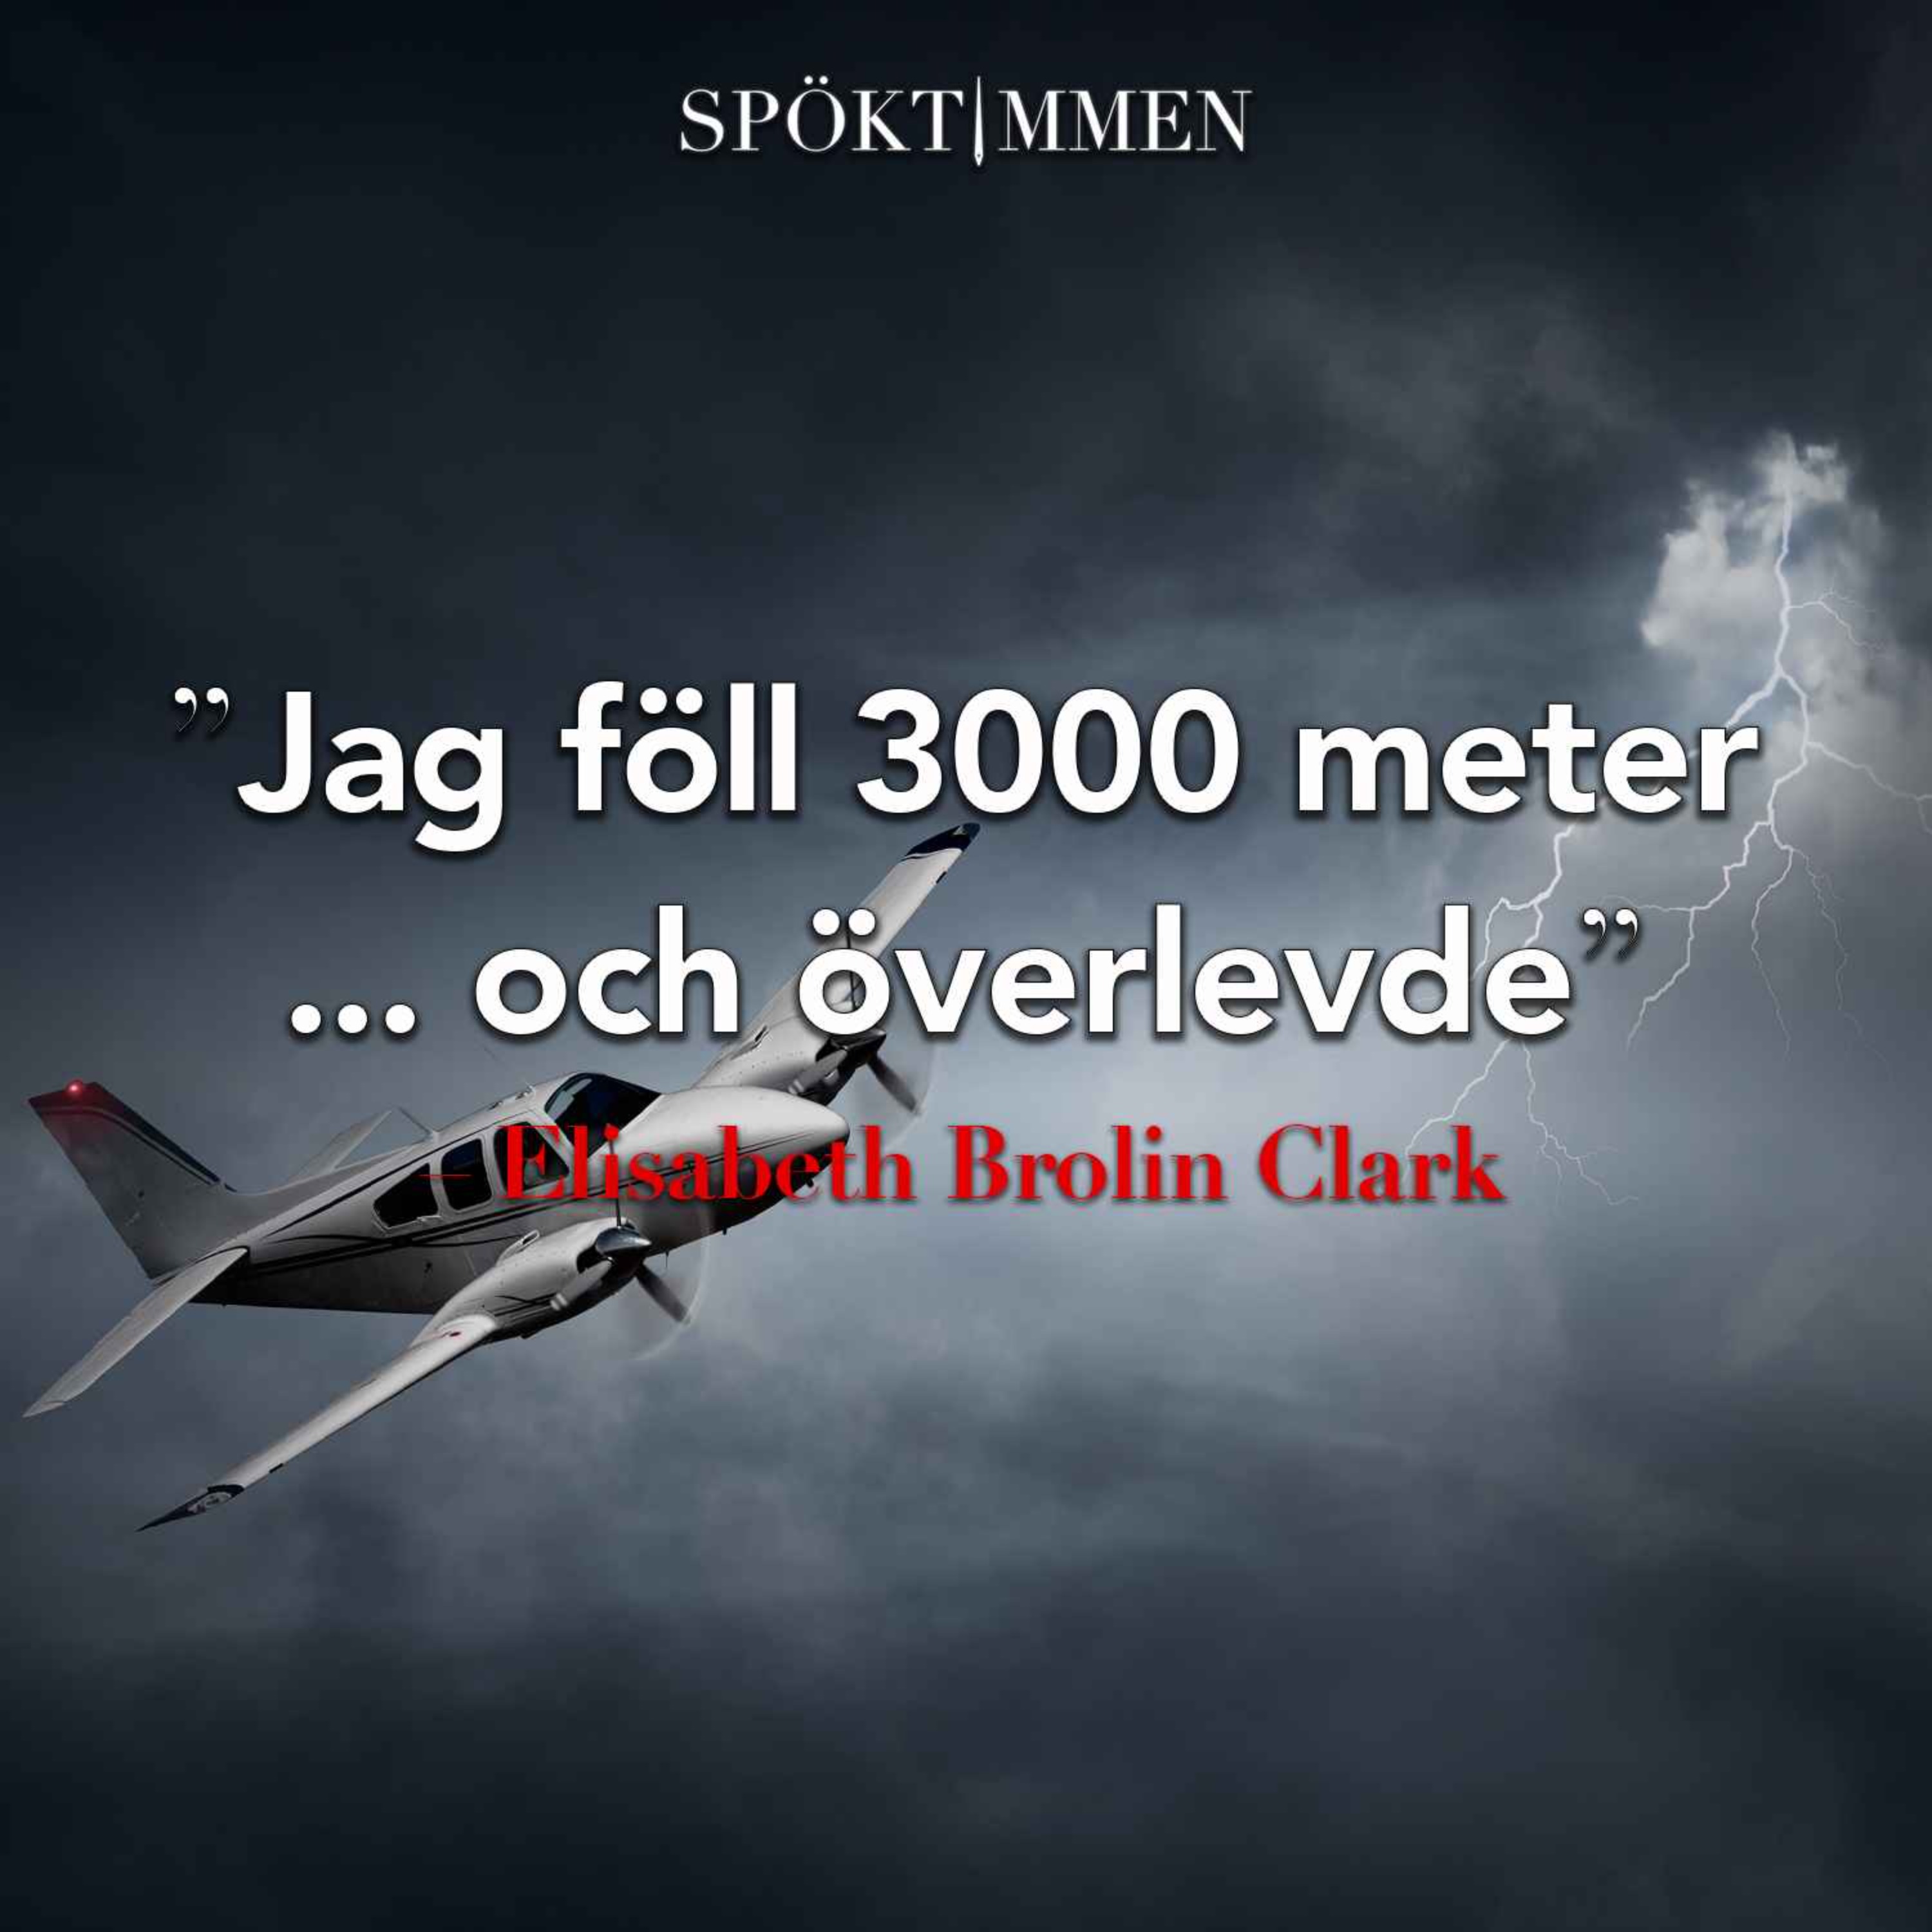 "Jag föll 3000 meter och överlevde" – Elisabeth Brolin Clark om flygkraschen 1980